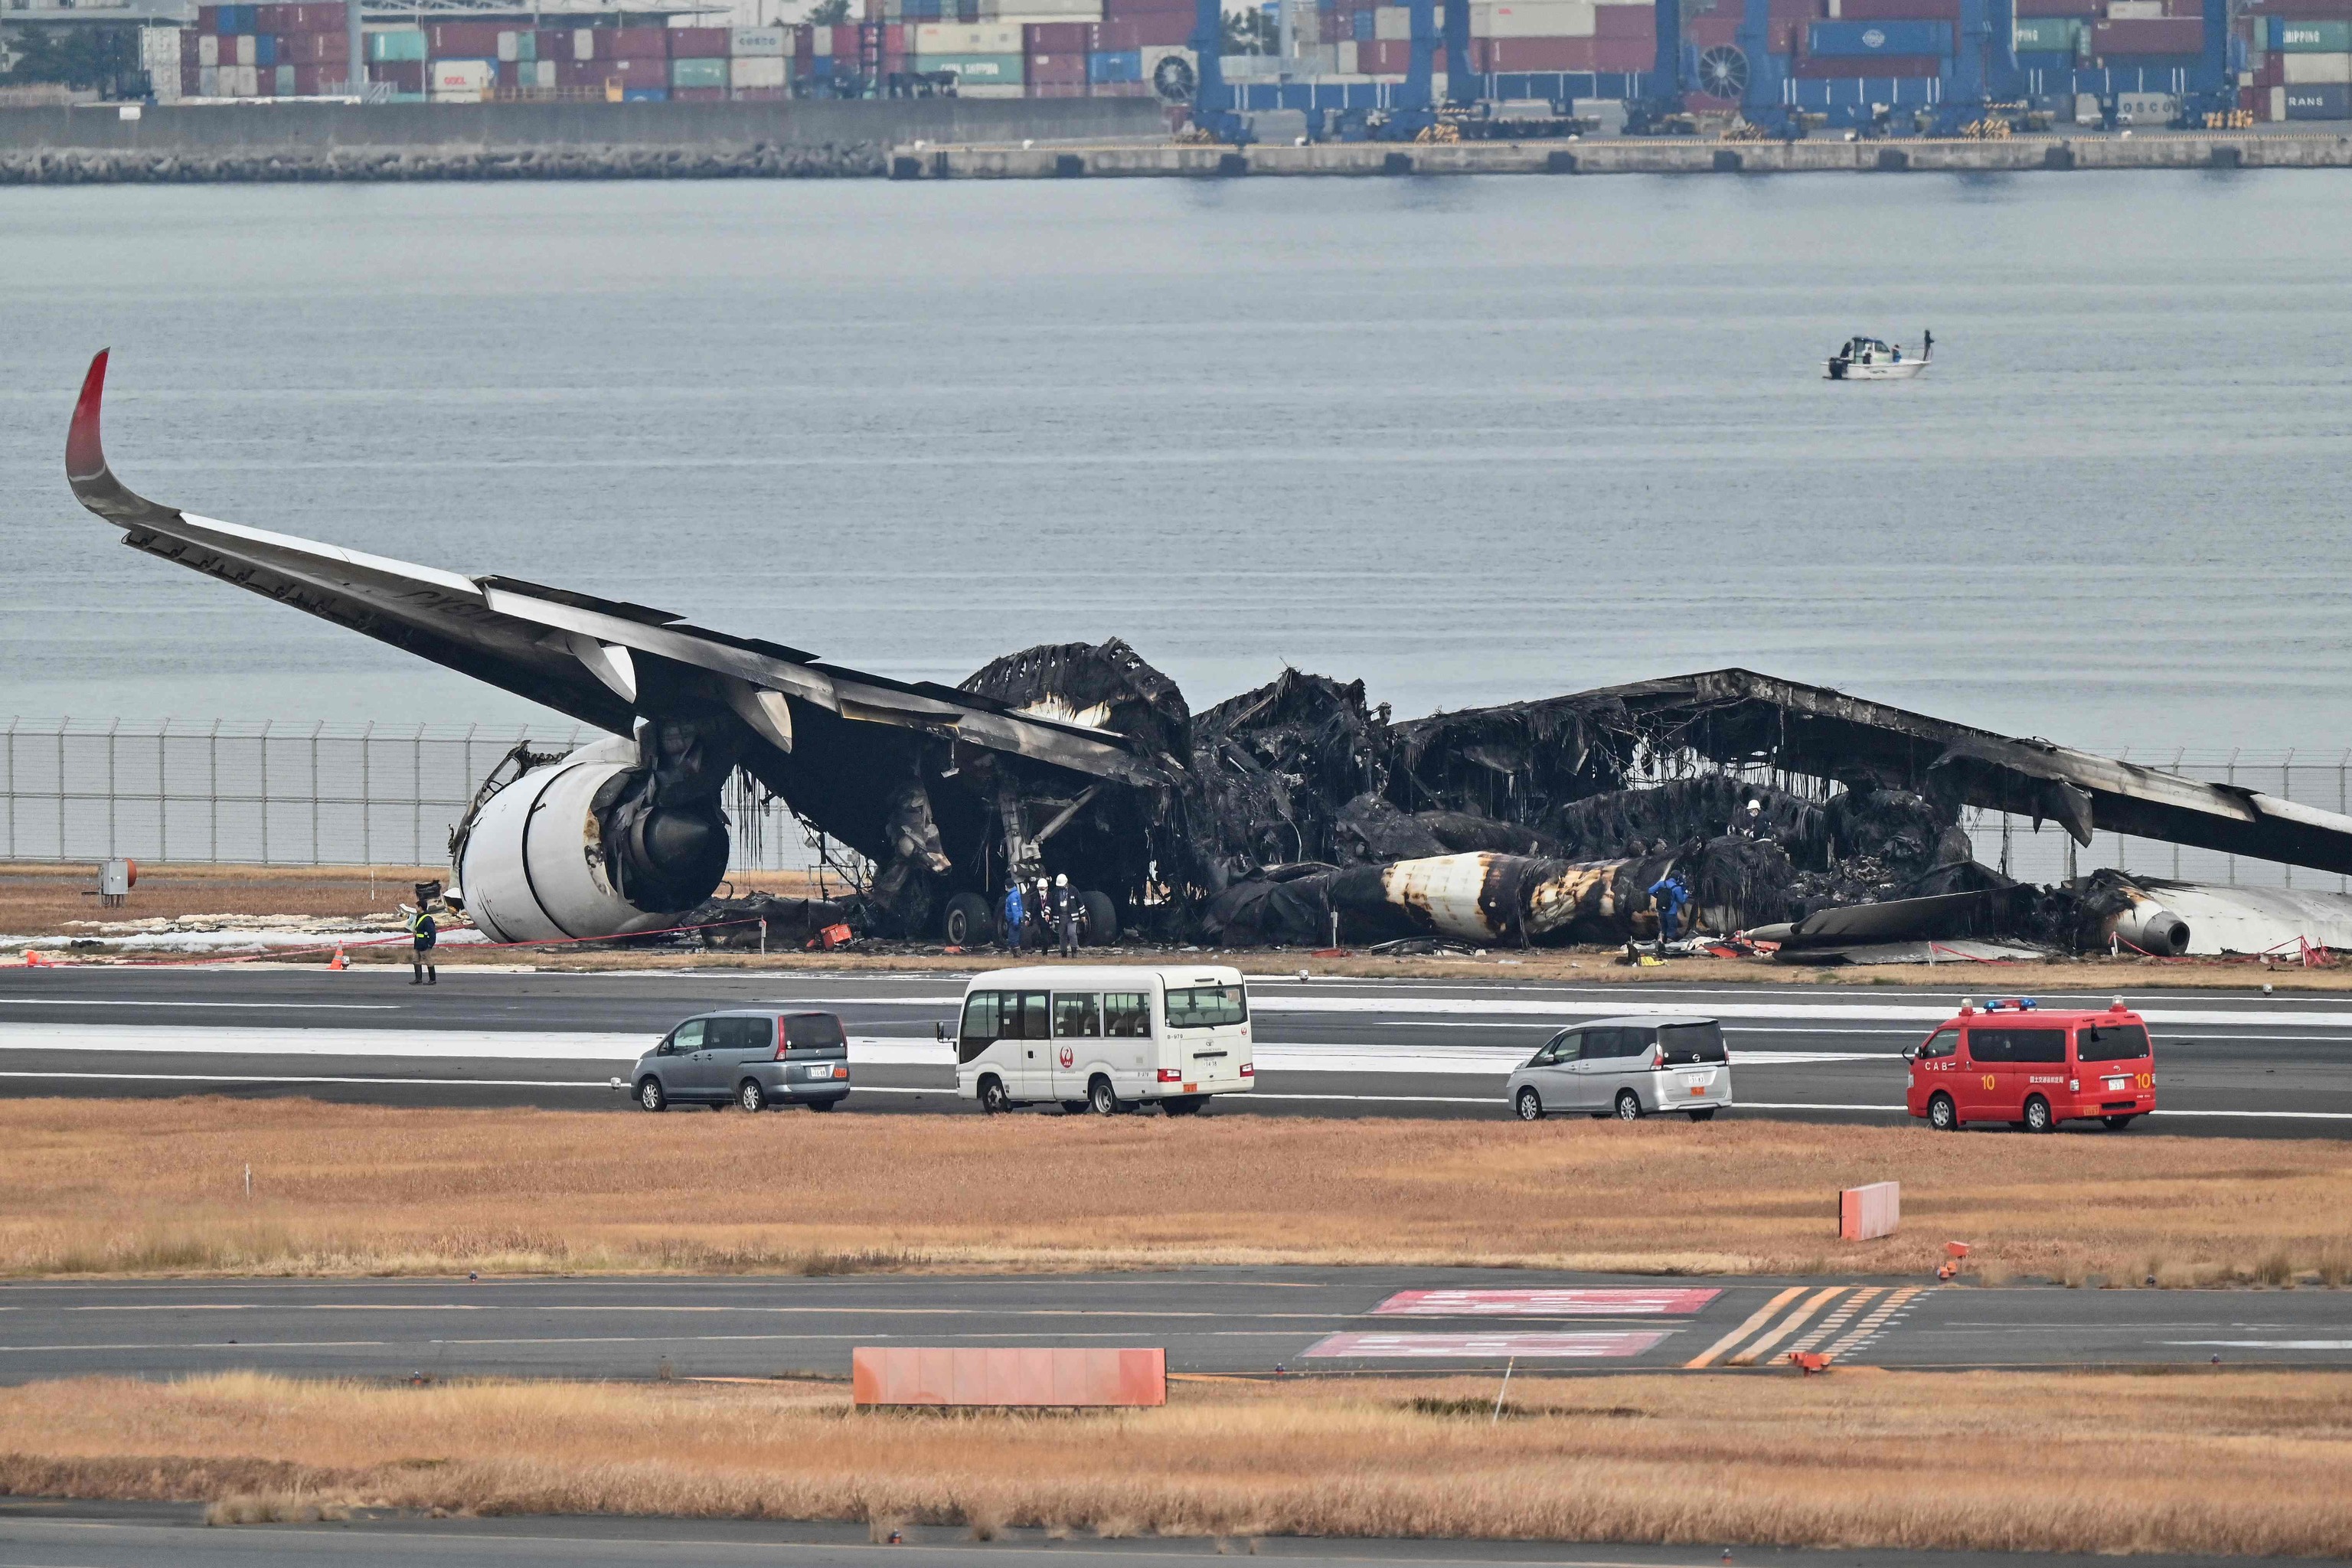 La Policía investiga una posible negligencia en el choque de los dos aviones en la pista de aterrizaje del aeropuerto de Tokio